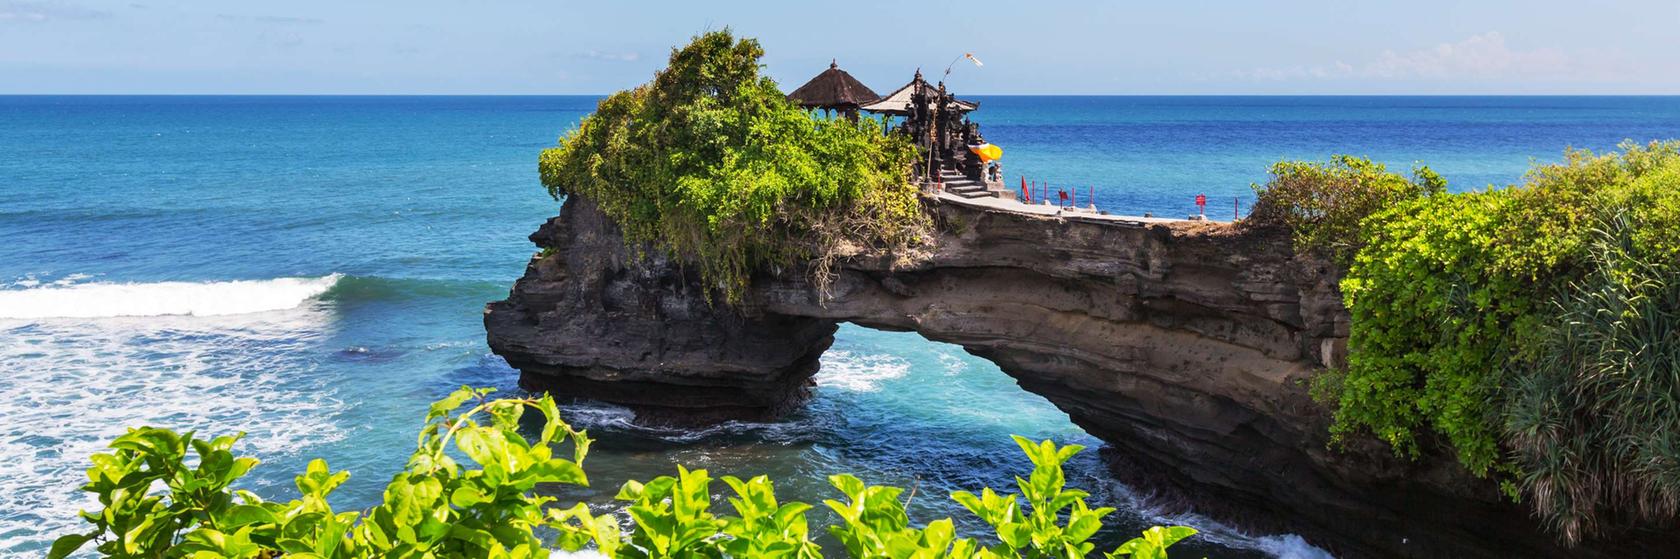 Dovolená Bali